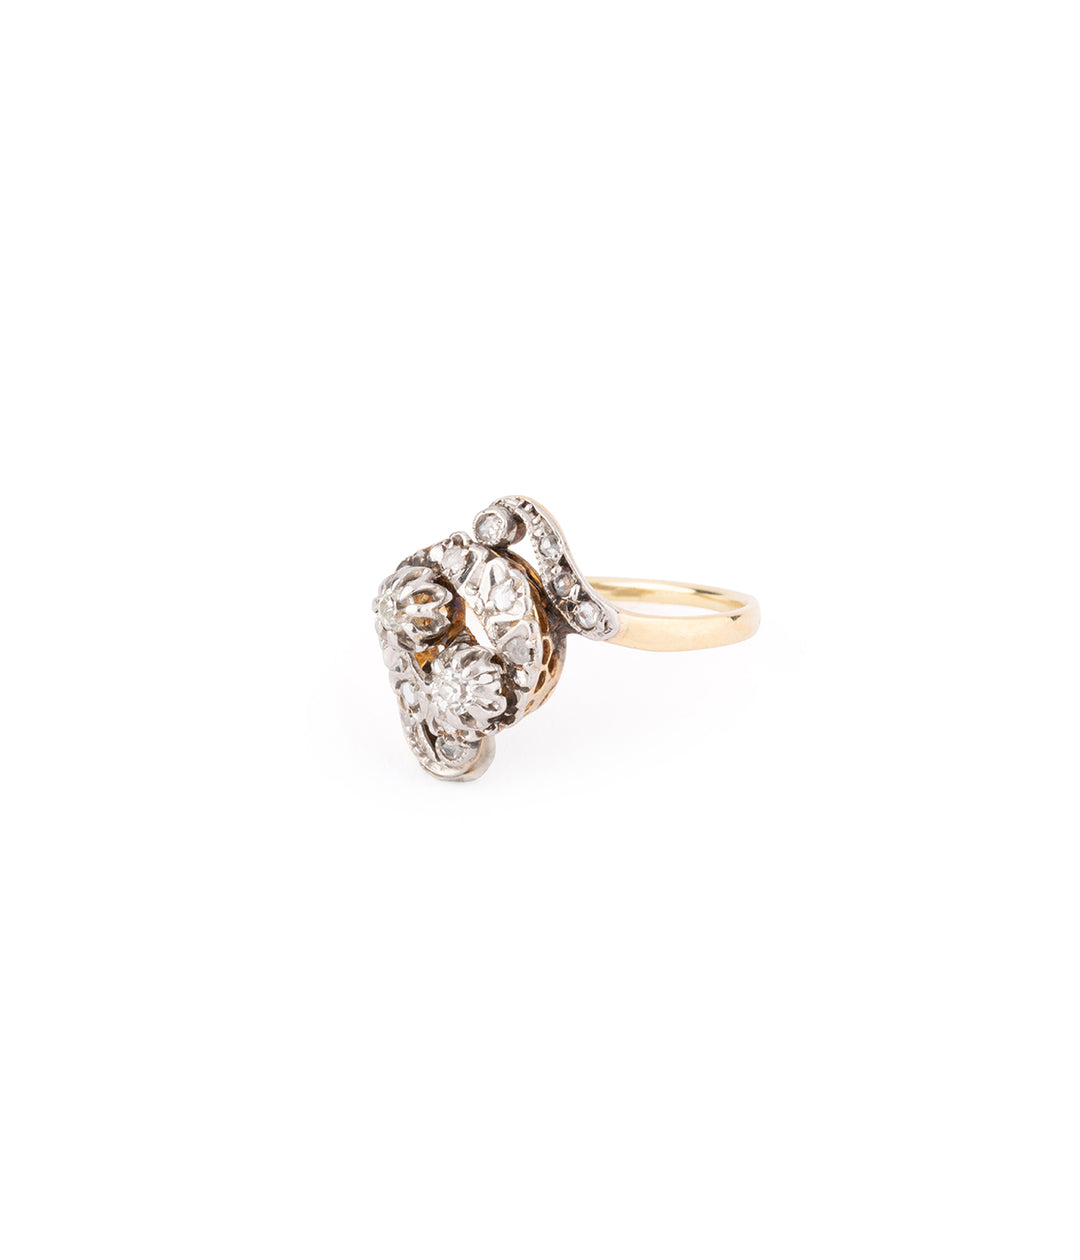 Antique diamond engagement ring "Rosius" - Caillou Paris